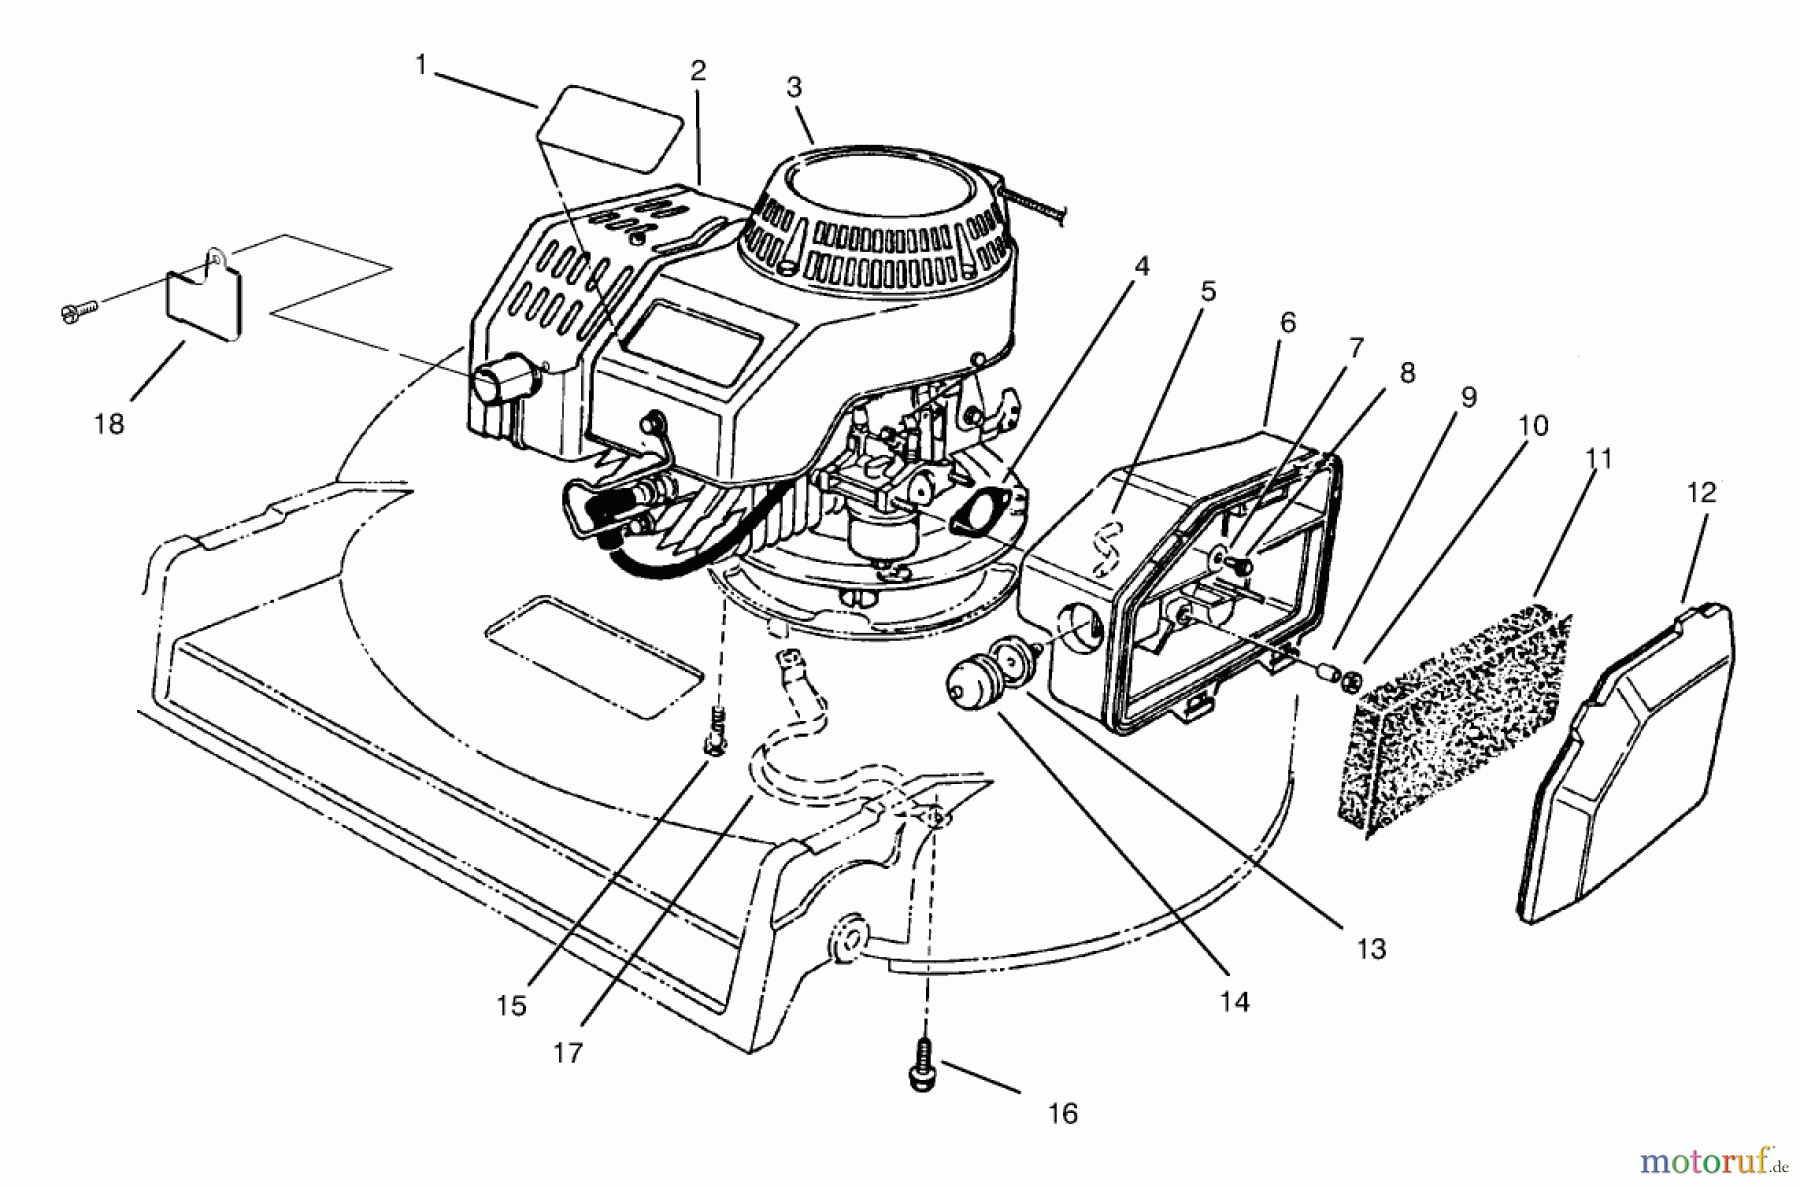  Toro Neu Mowers, Walk-Behind Seite 2 22045 - Toro Recycler Mower, 1997 (7900001-7999999) ENGINE ASSEMBLY